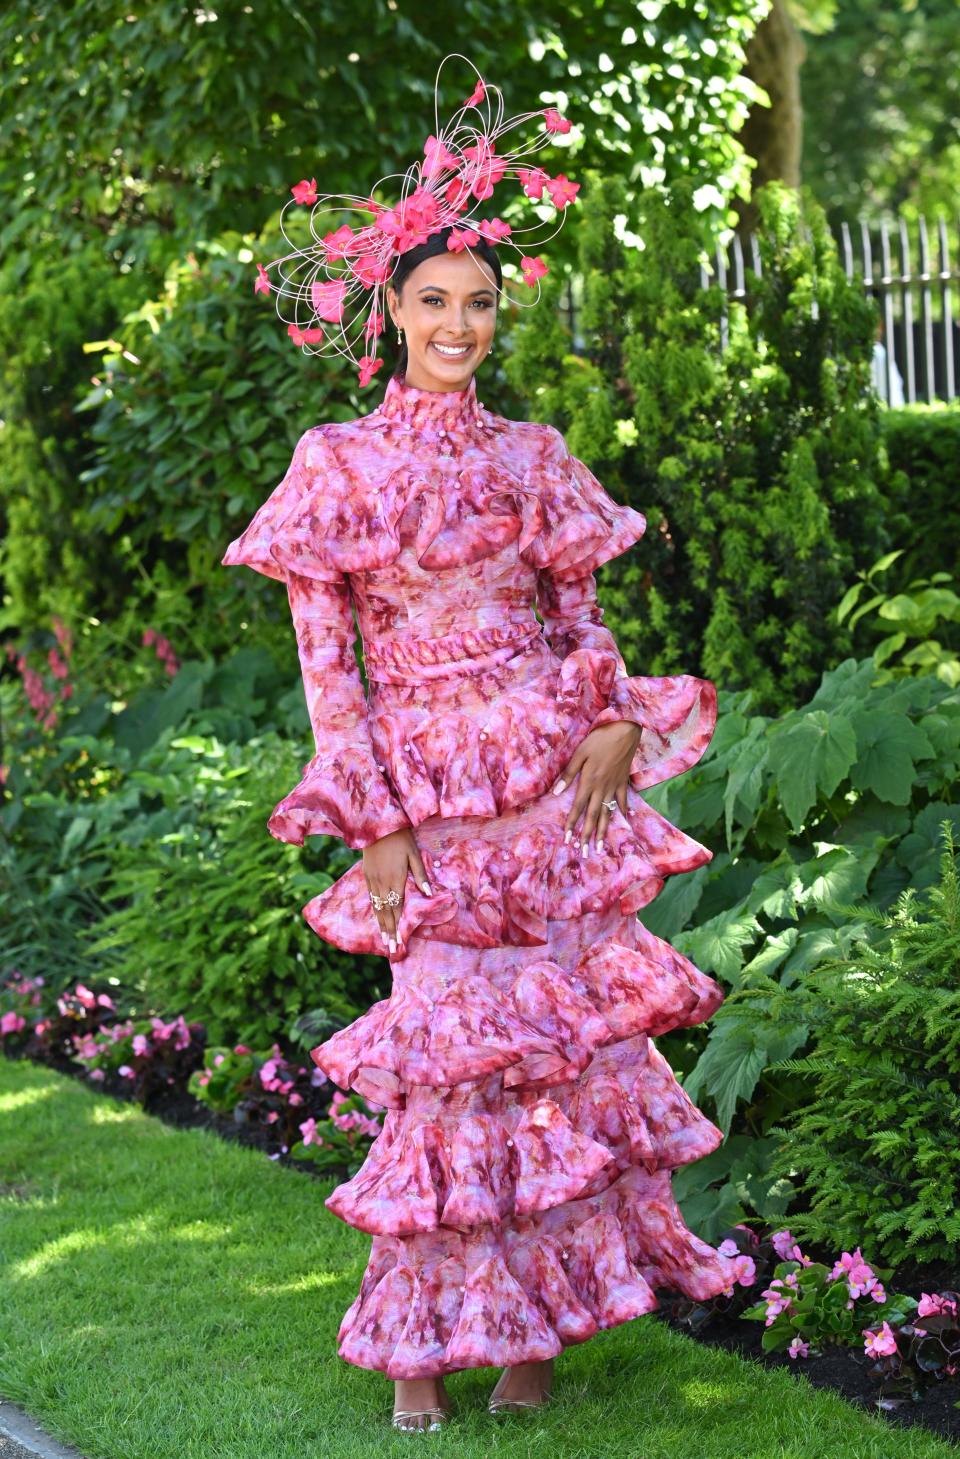 British radio presenter Maya Jama wore a multi-tiered pink floral gown.